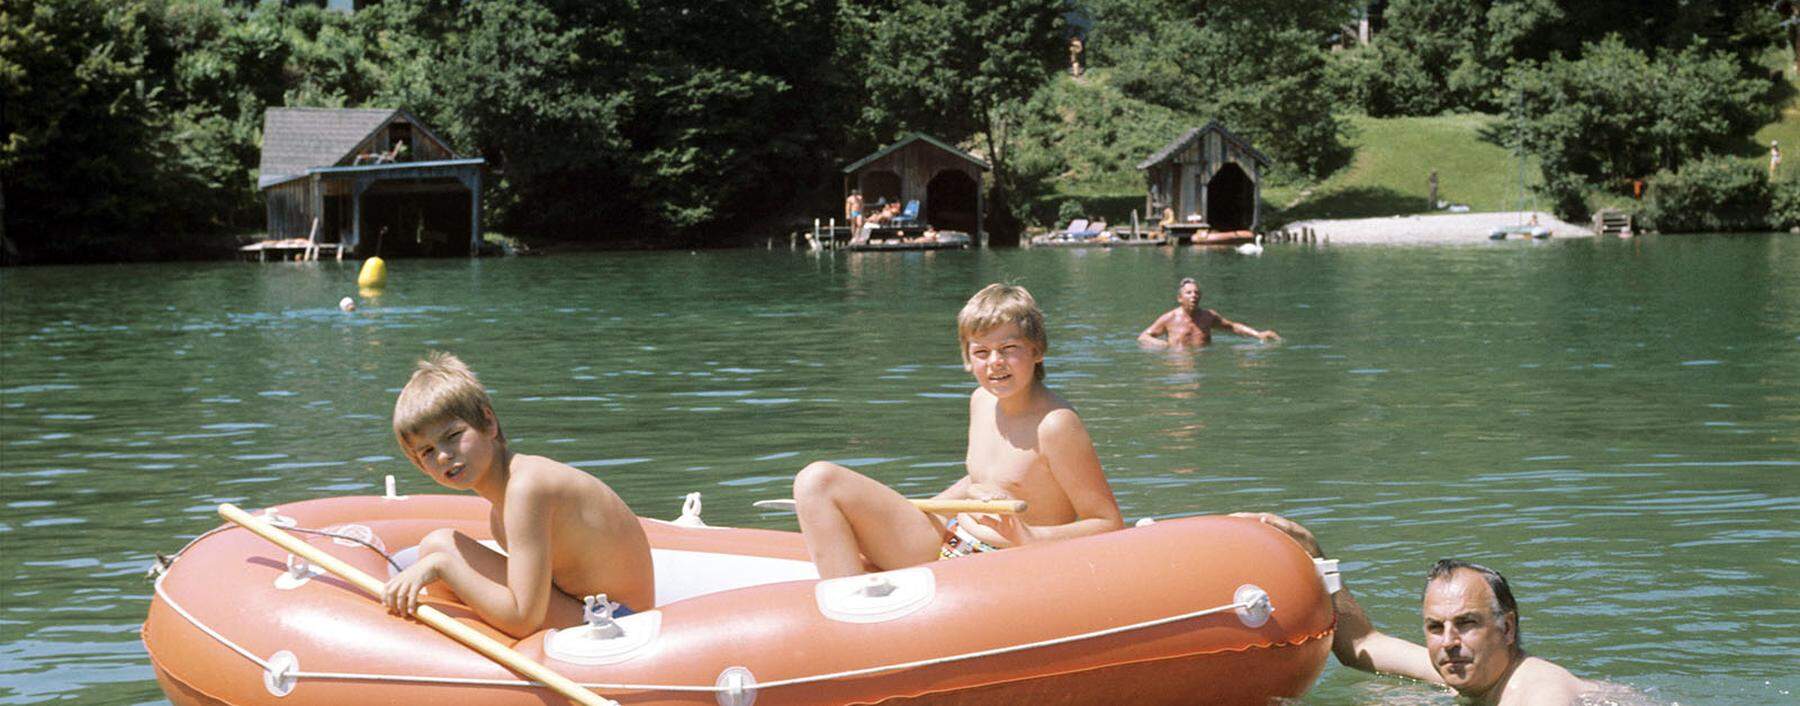 Kein Sommer ohne St. Gilgen: Helmut Kohl, damals noch Ministerpräsident, schiebt den Nachwuchs 1975 durch den Wolfgangsee.